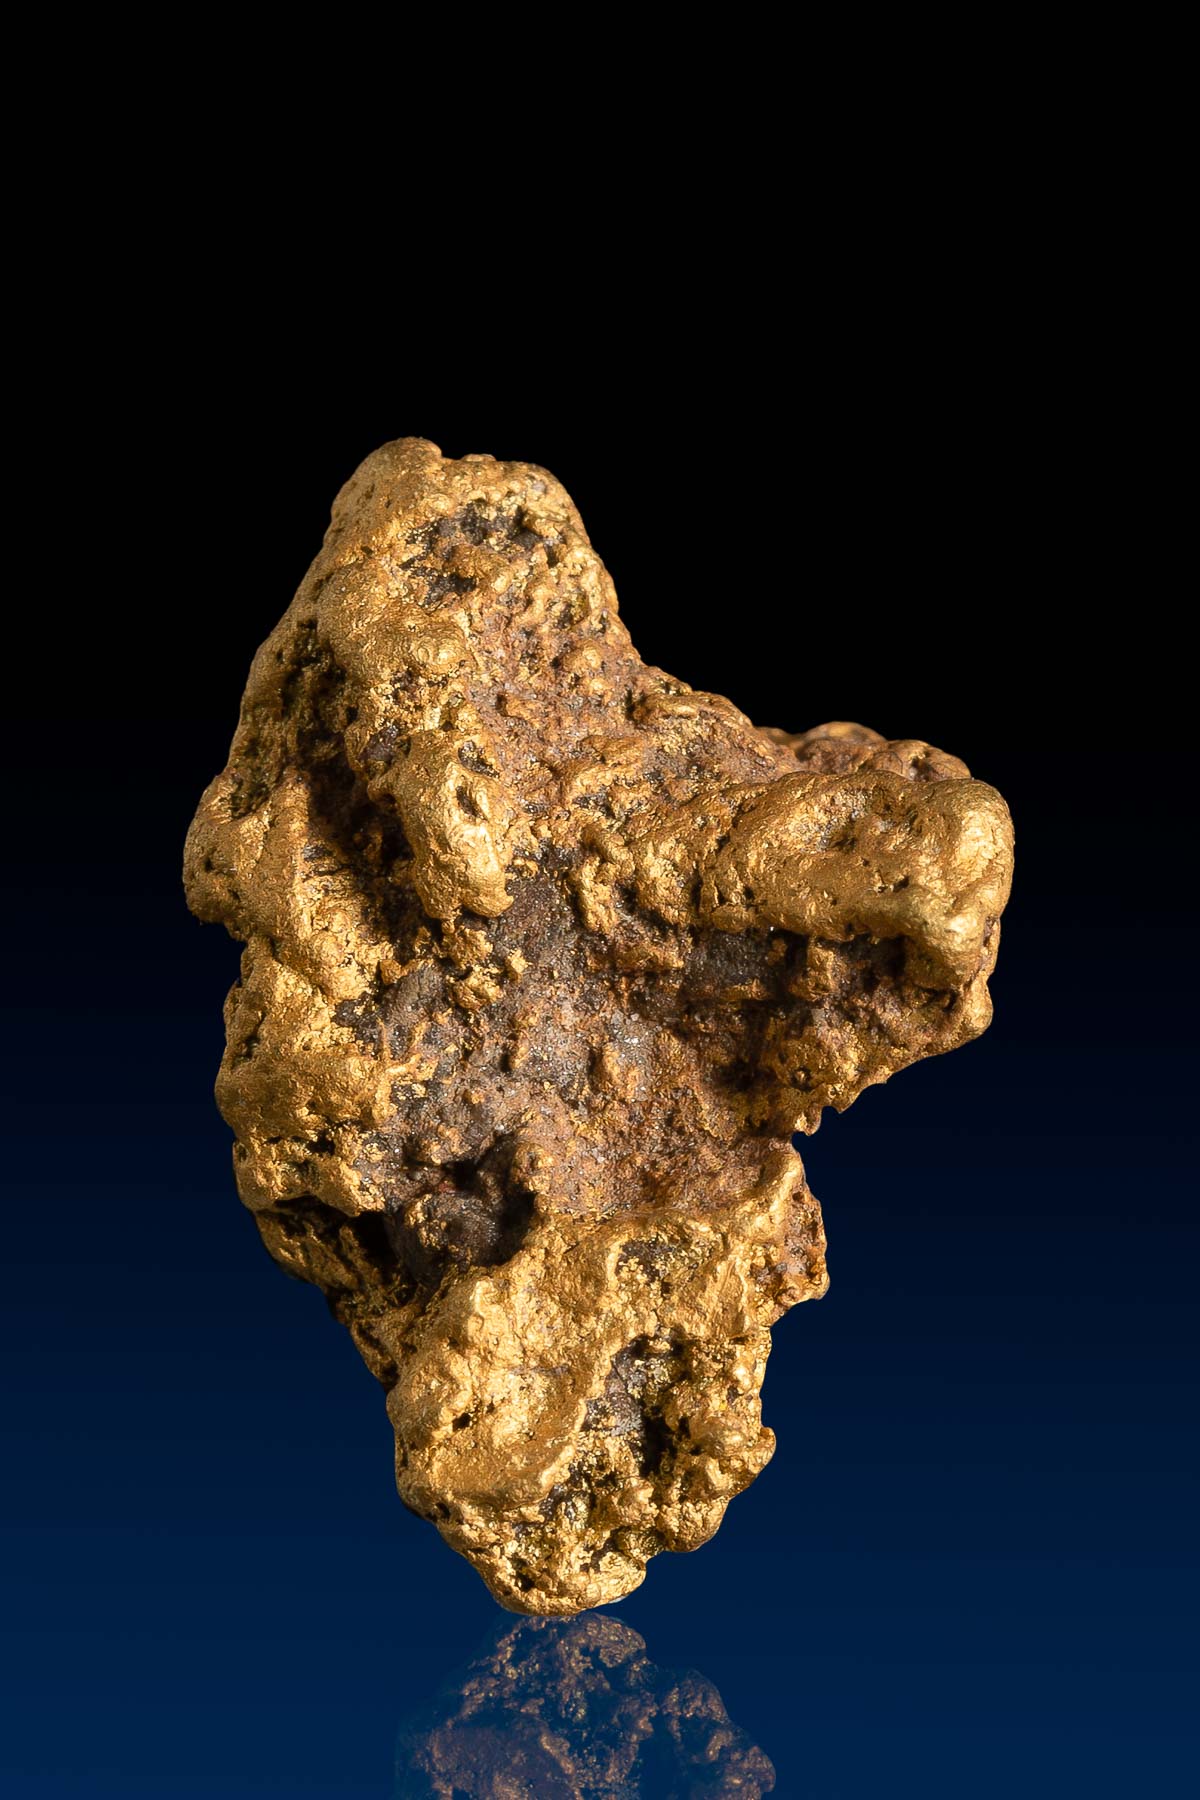 Tall Armed Arizona Natural Gold Nugget - 4.80 grams